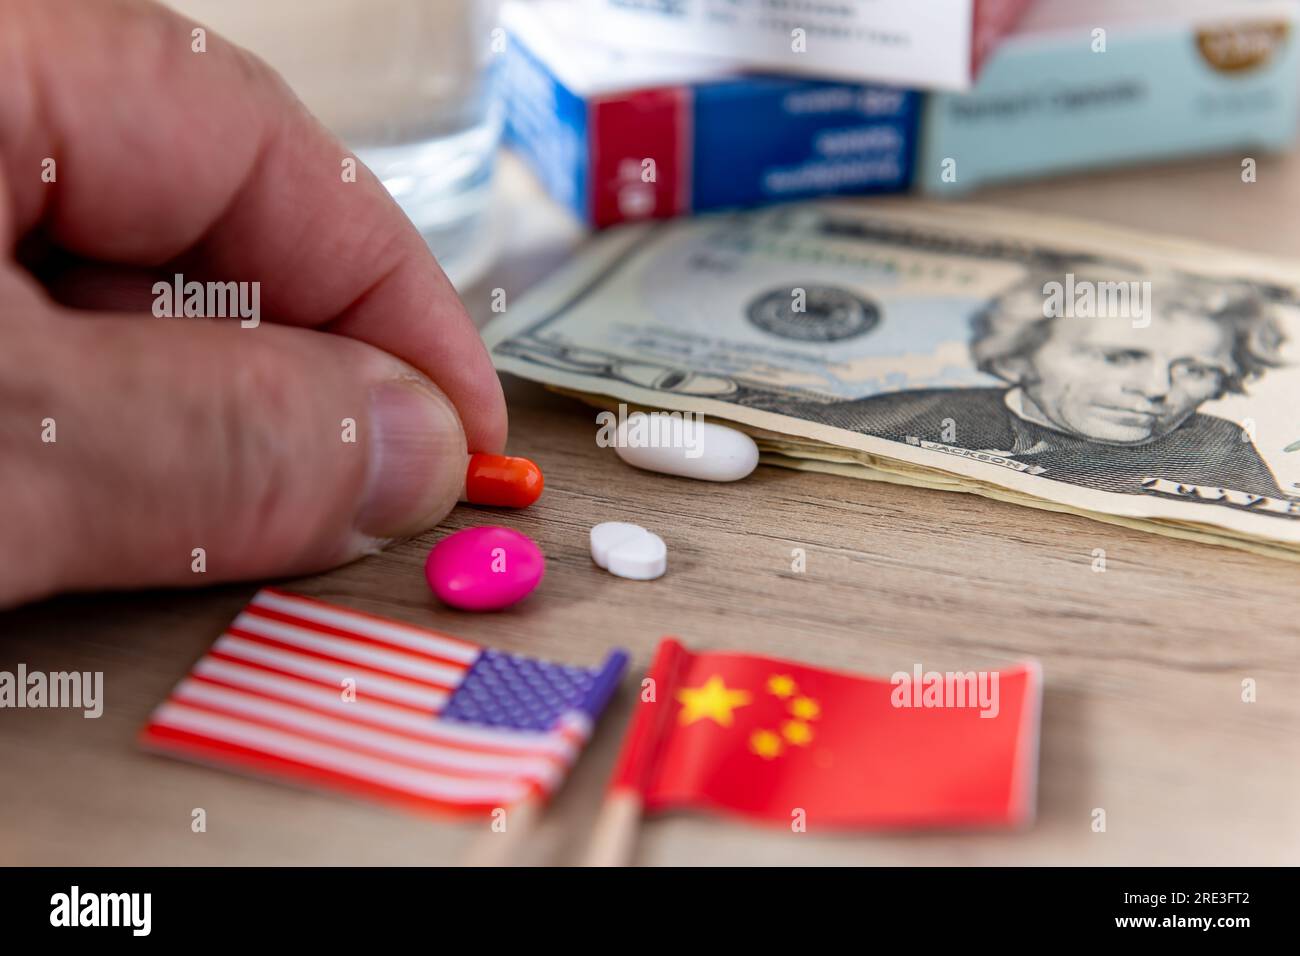 Un concetto di conflitto farmaceutico, medico e farmaceutico con le bandiere americane e cinesi, le banconote in dollari americani e varie medicine su una scrivania. Foto Stock